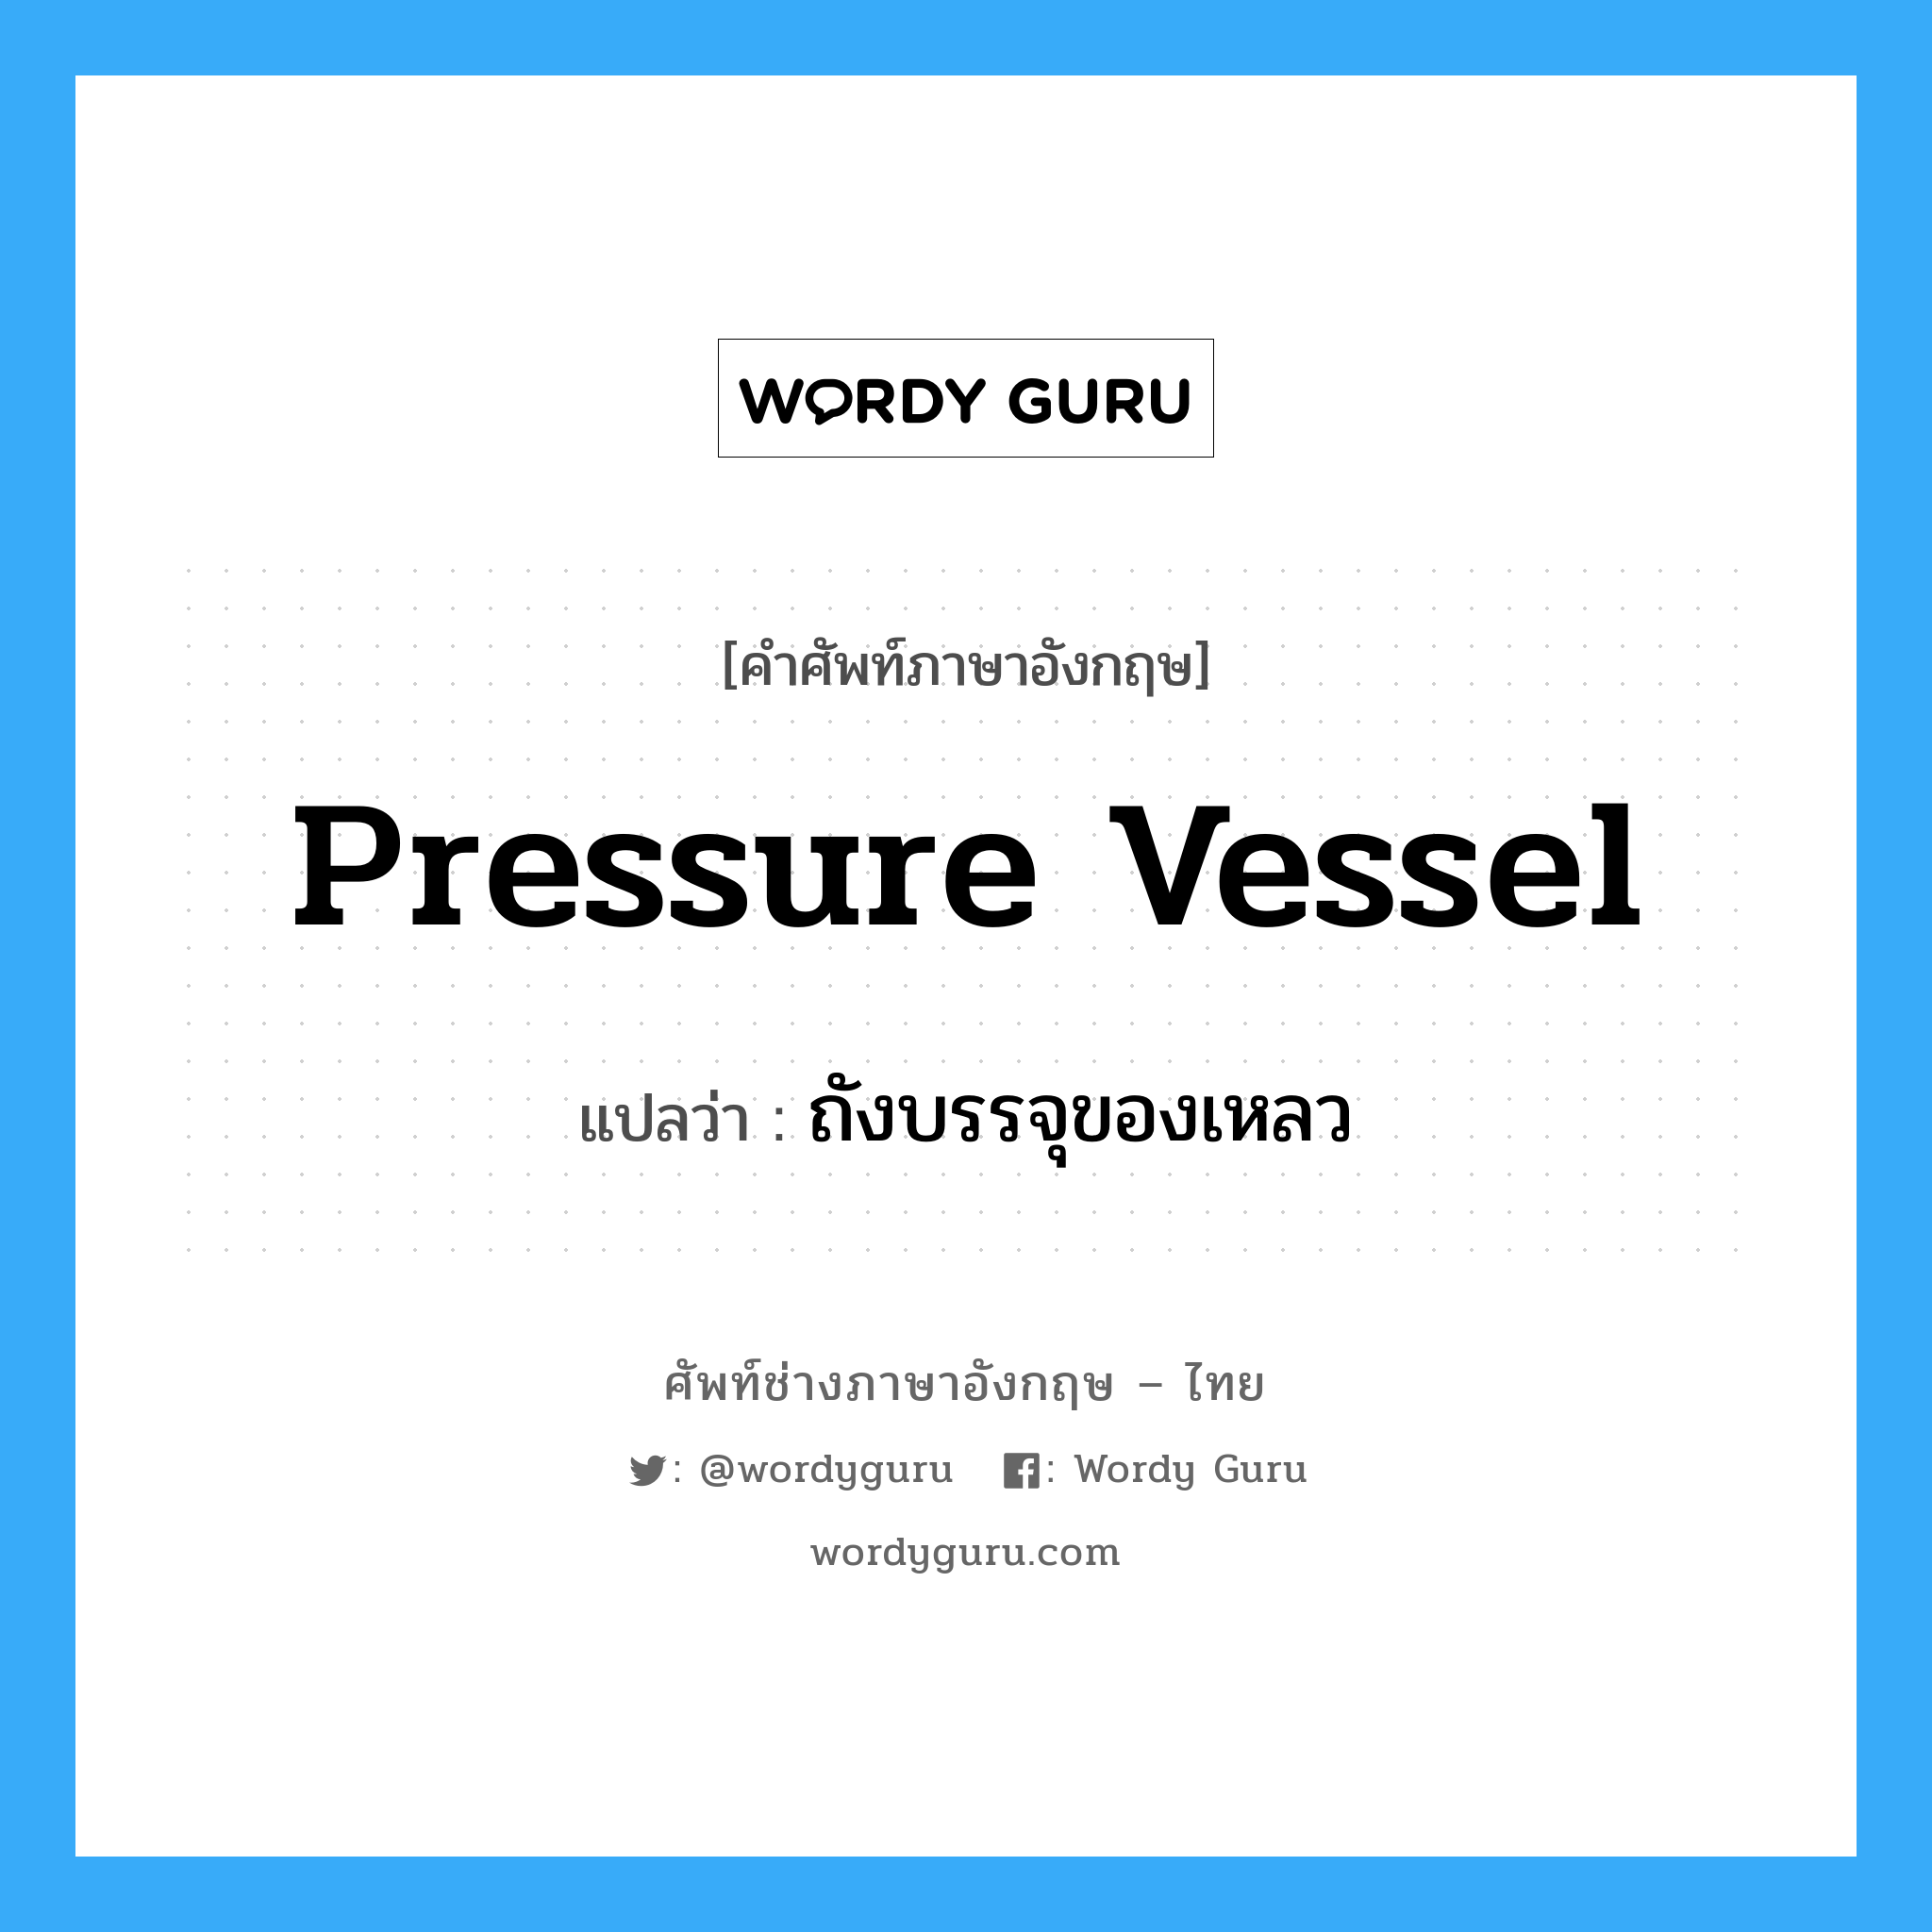 ถังบรรจุของเหลว ภาษาอังกฤษ?, คำศัพท์ช่างภาษาอังกฤษ - ไทย ถังบรรจุของเหลว คำศัพท์ภาษาอังกฤษ ถังบรรจุของเหลว แปลว่า pressure vessel